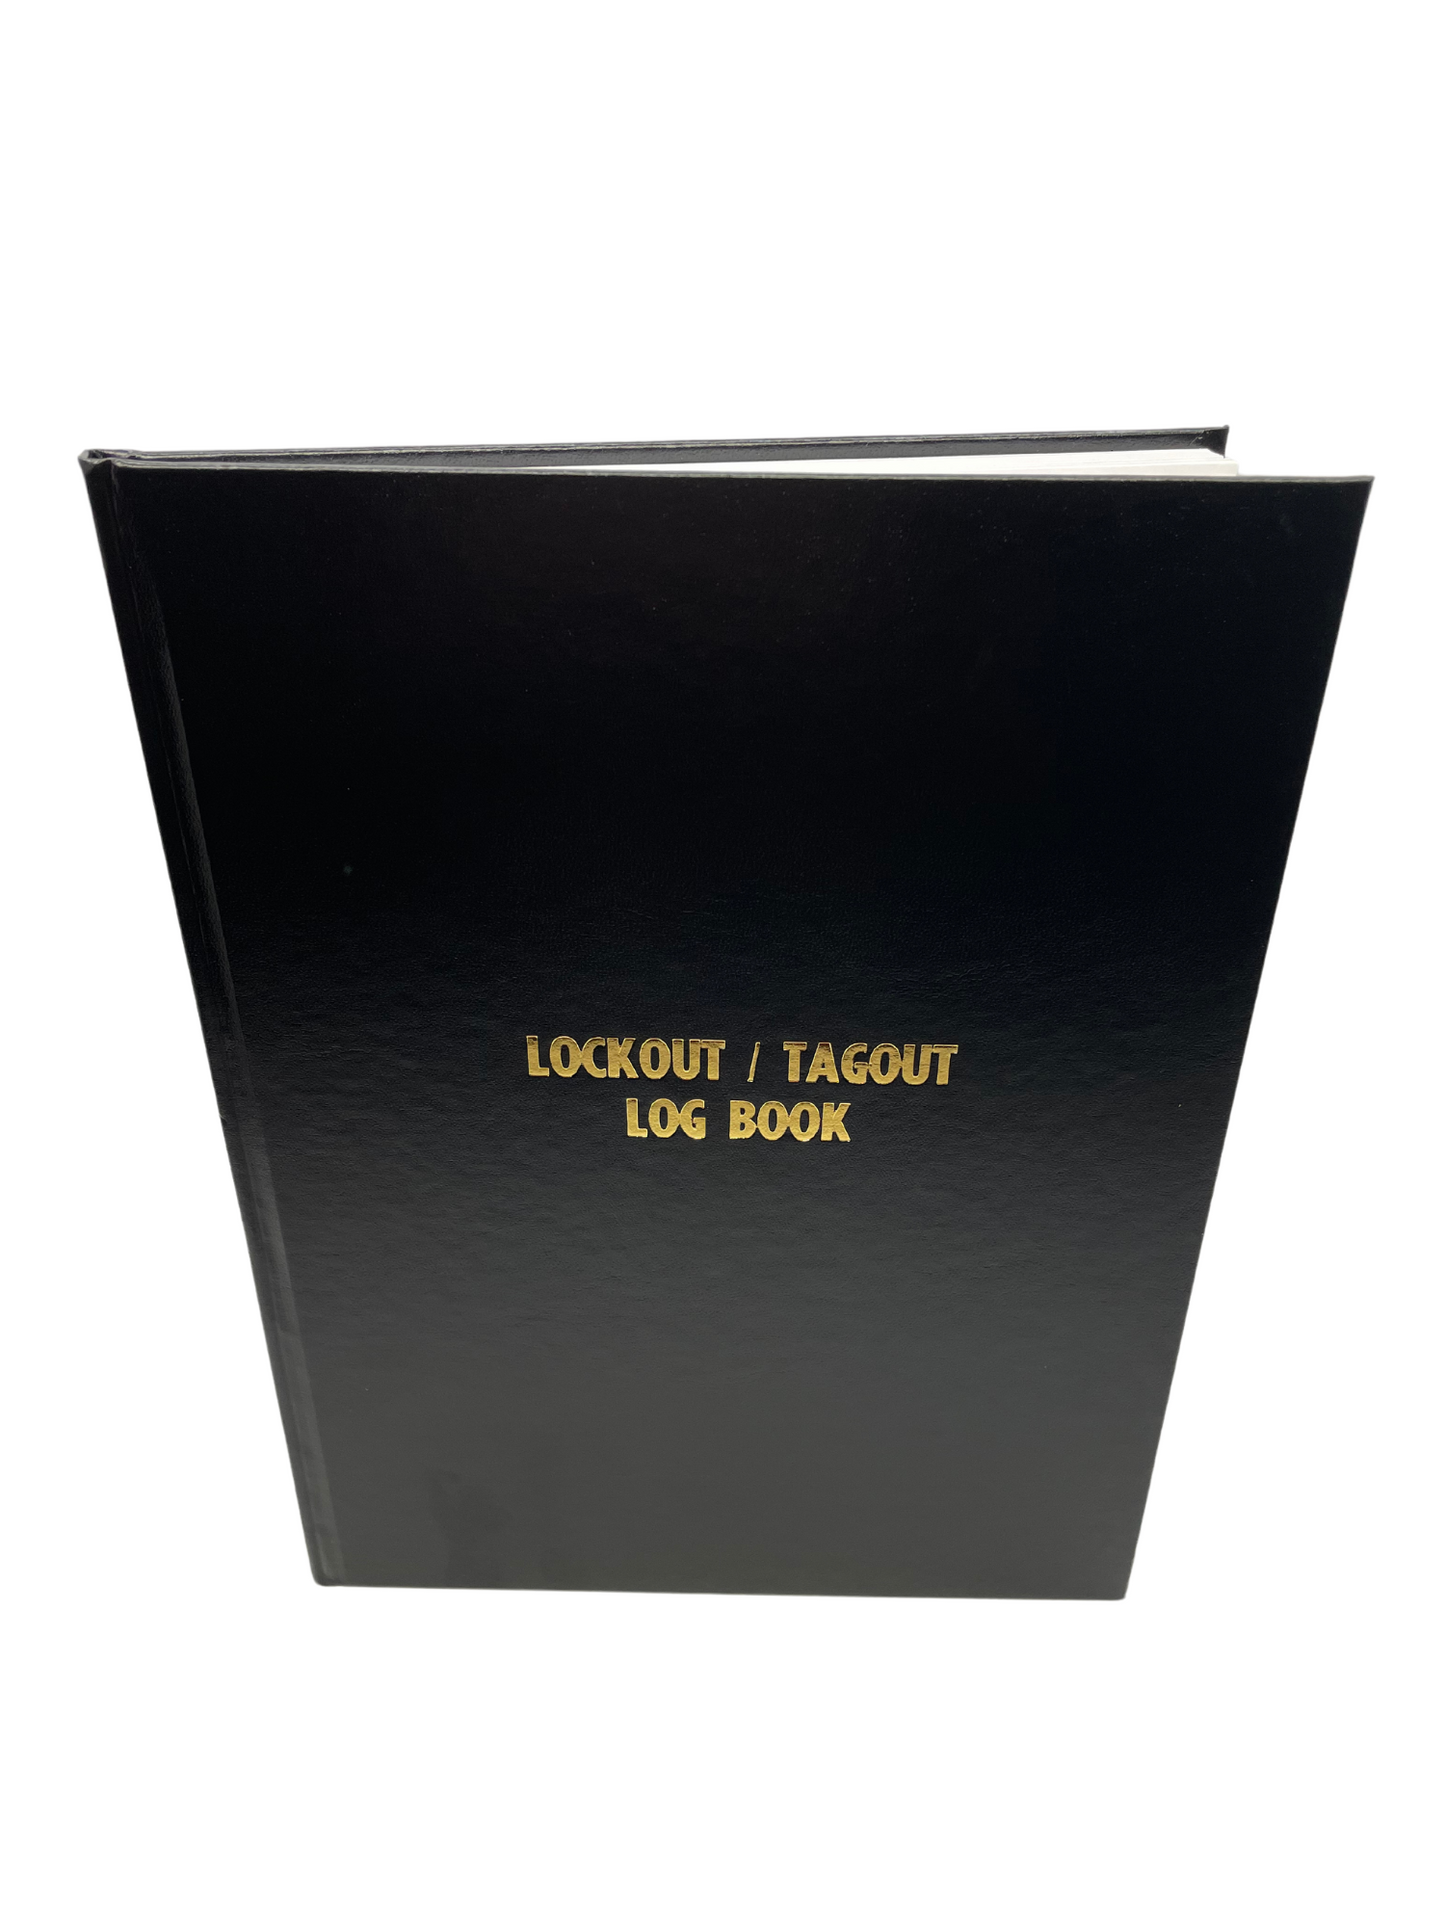 Lockout / Tagout Log Book #922